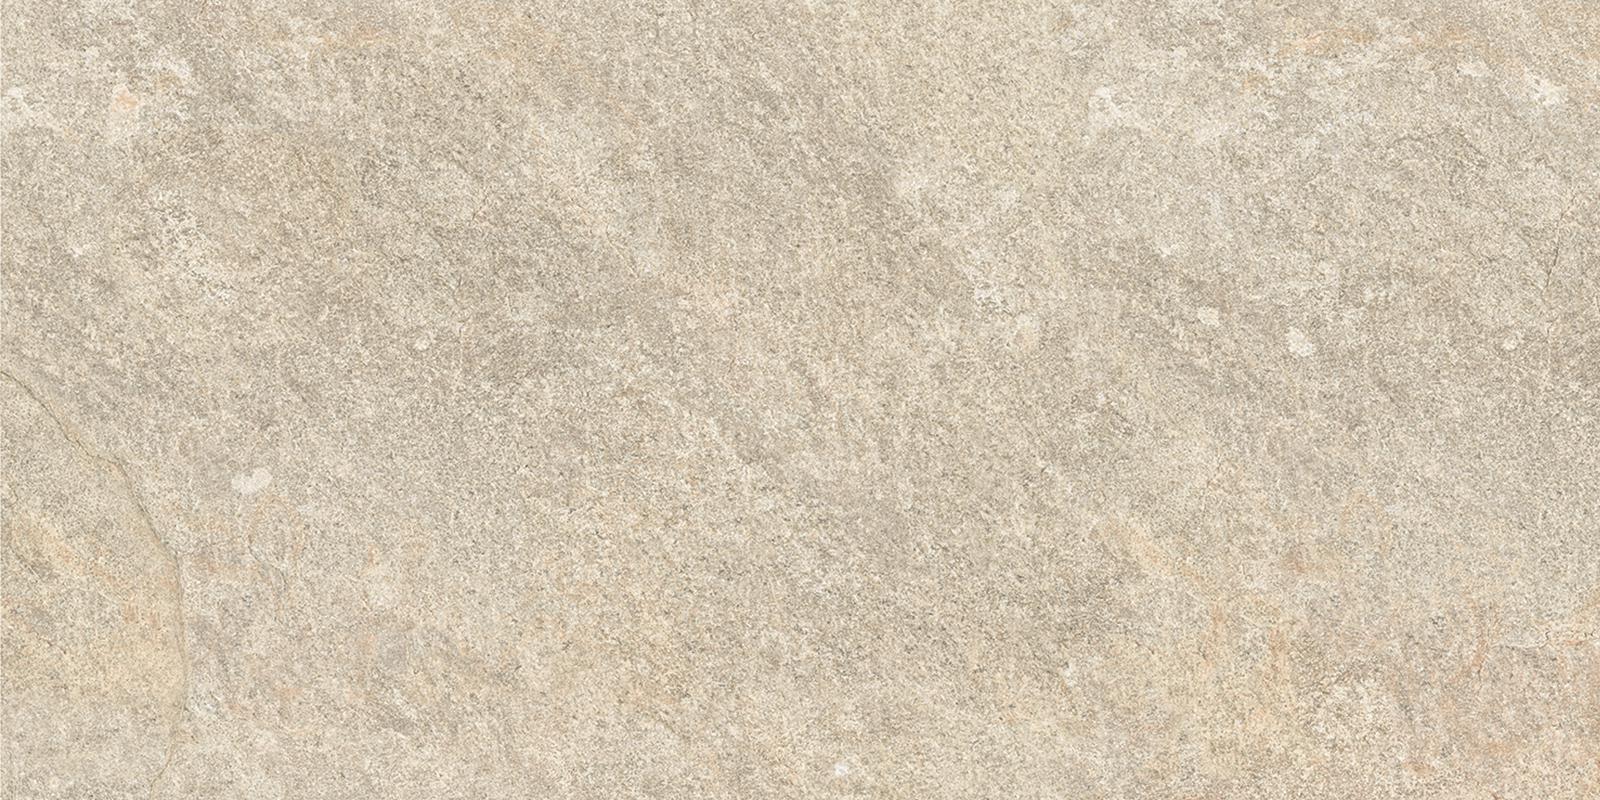 Ergon Oros Stone Sand 30x60